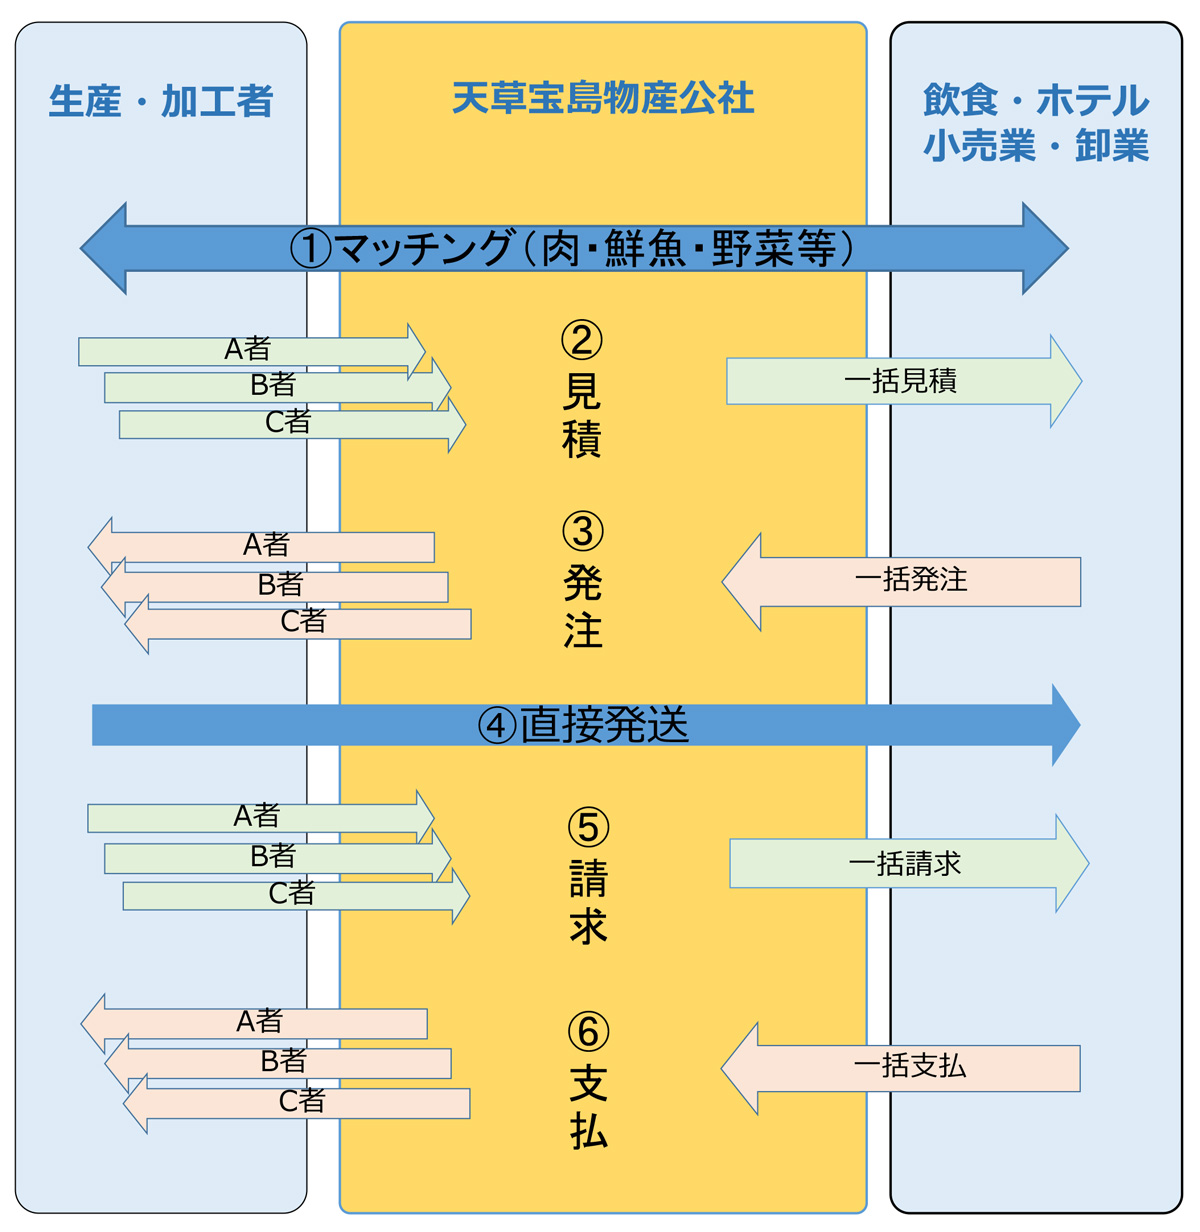 天草宝島物産公社のイメージ図